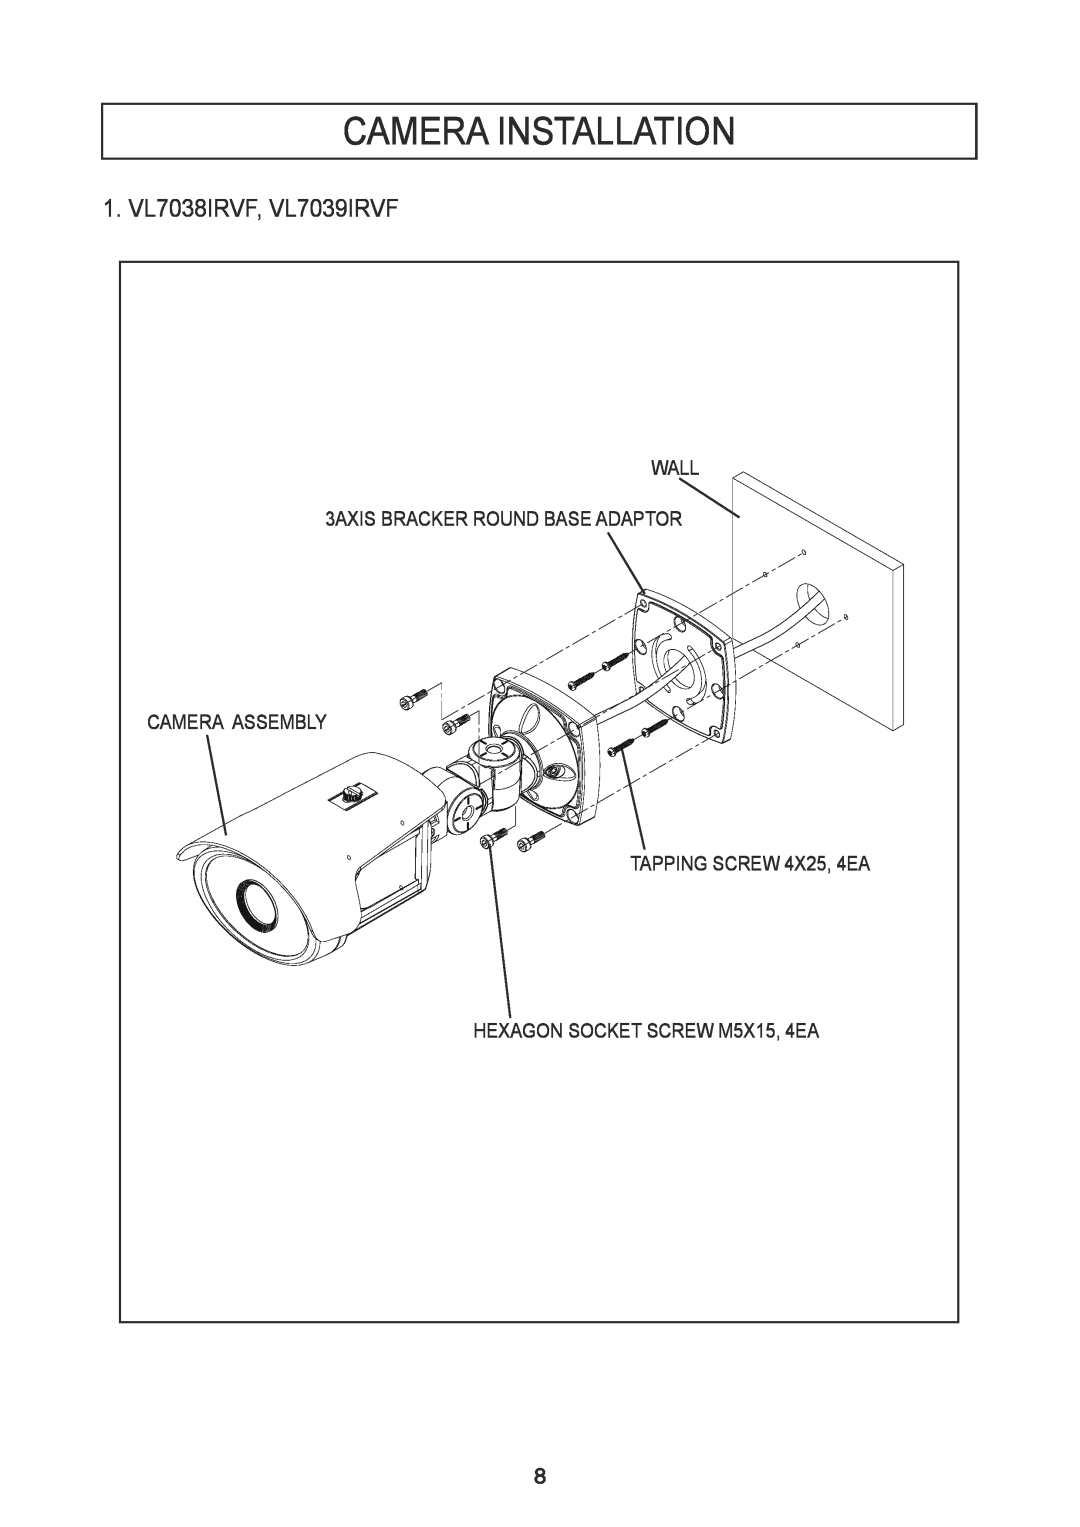 Speco Technologies instruction manual Camera Installation, 1. VL7038IRVF, VL7039IRVF 